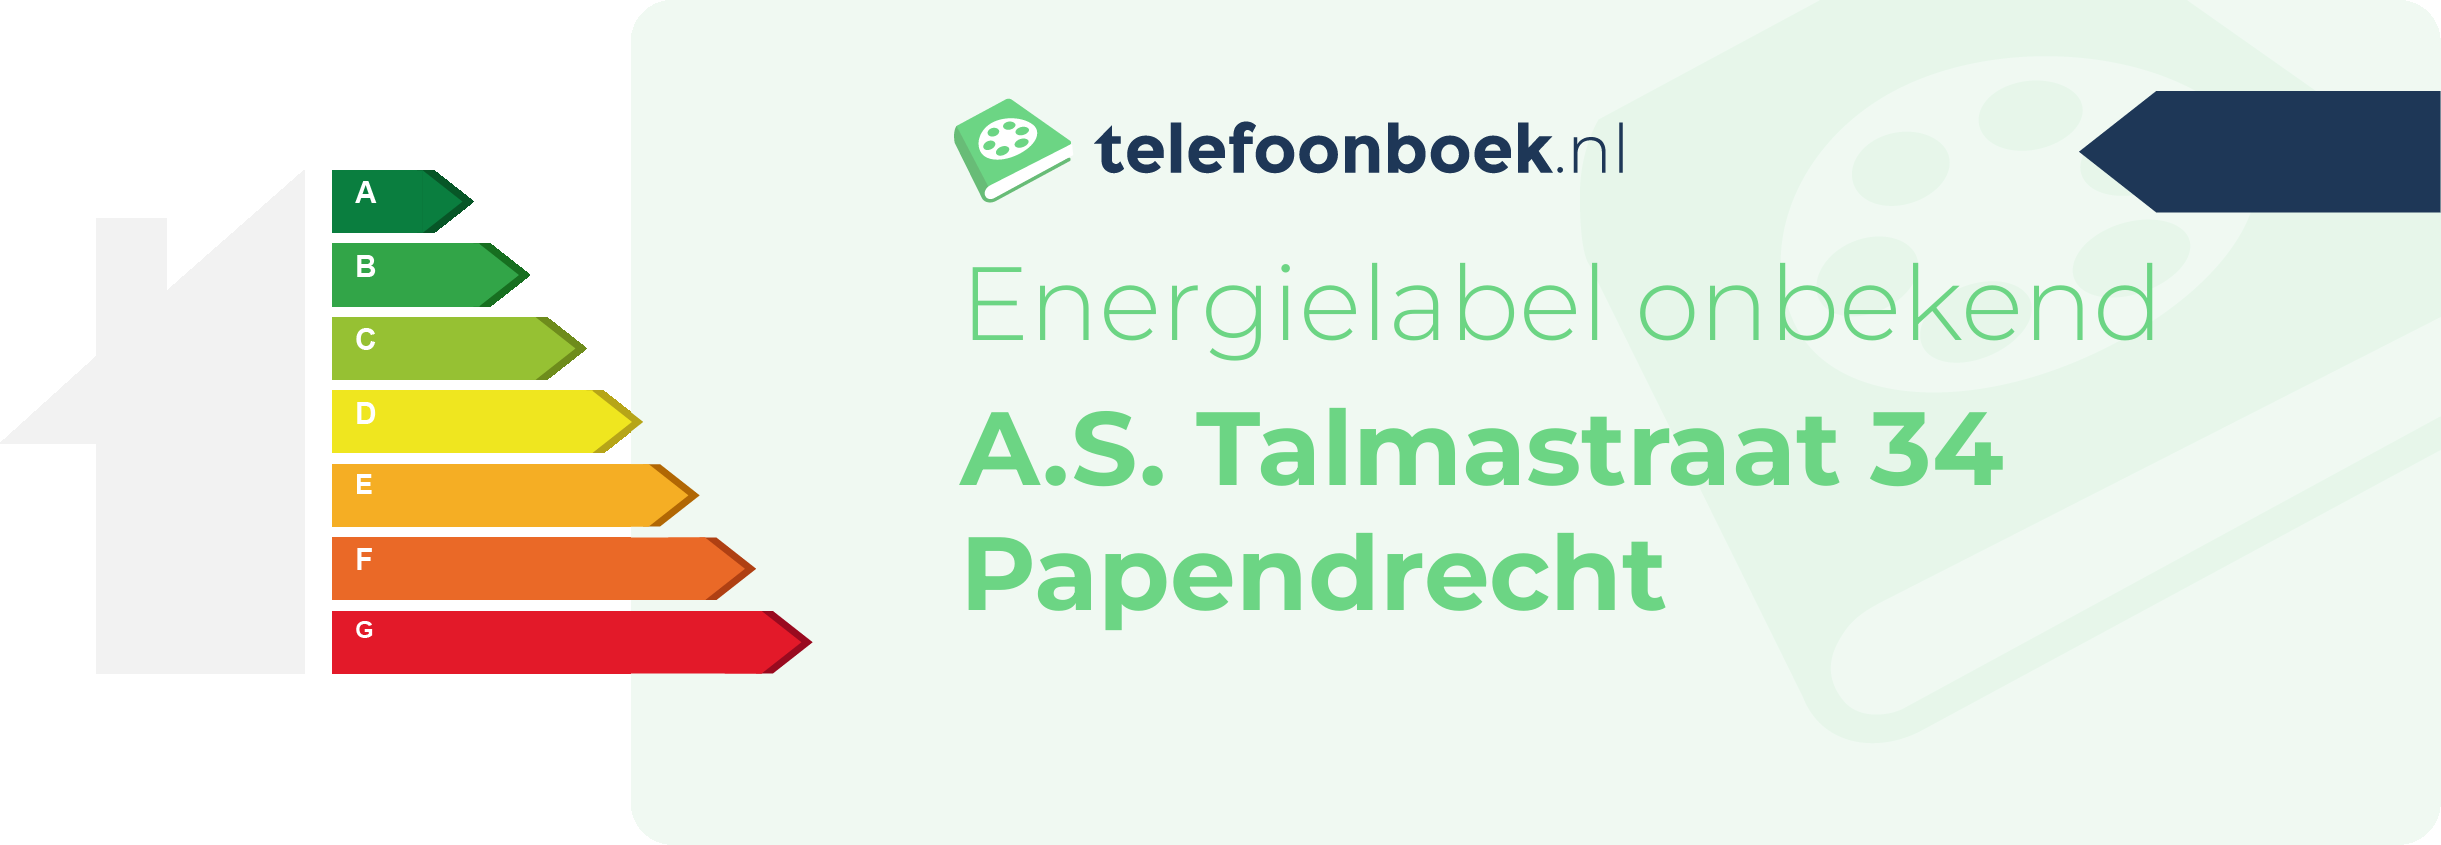 Energielabel A.S. Talmastraat 34 Papendrecht